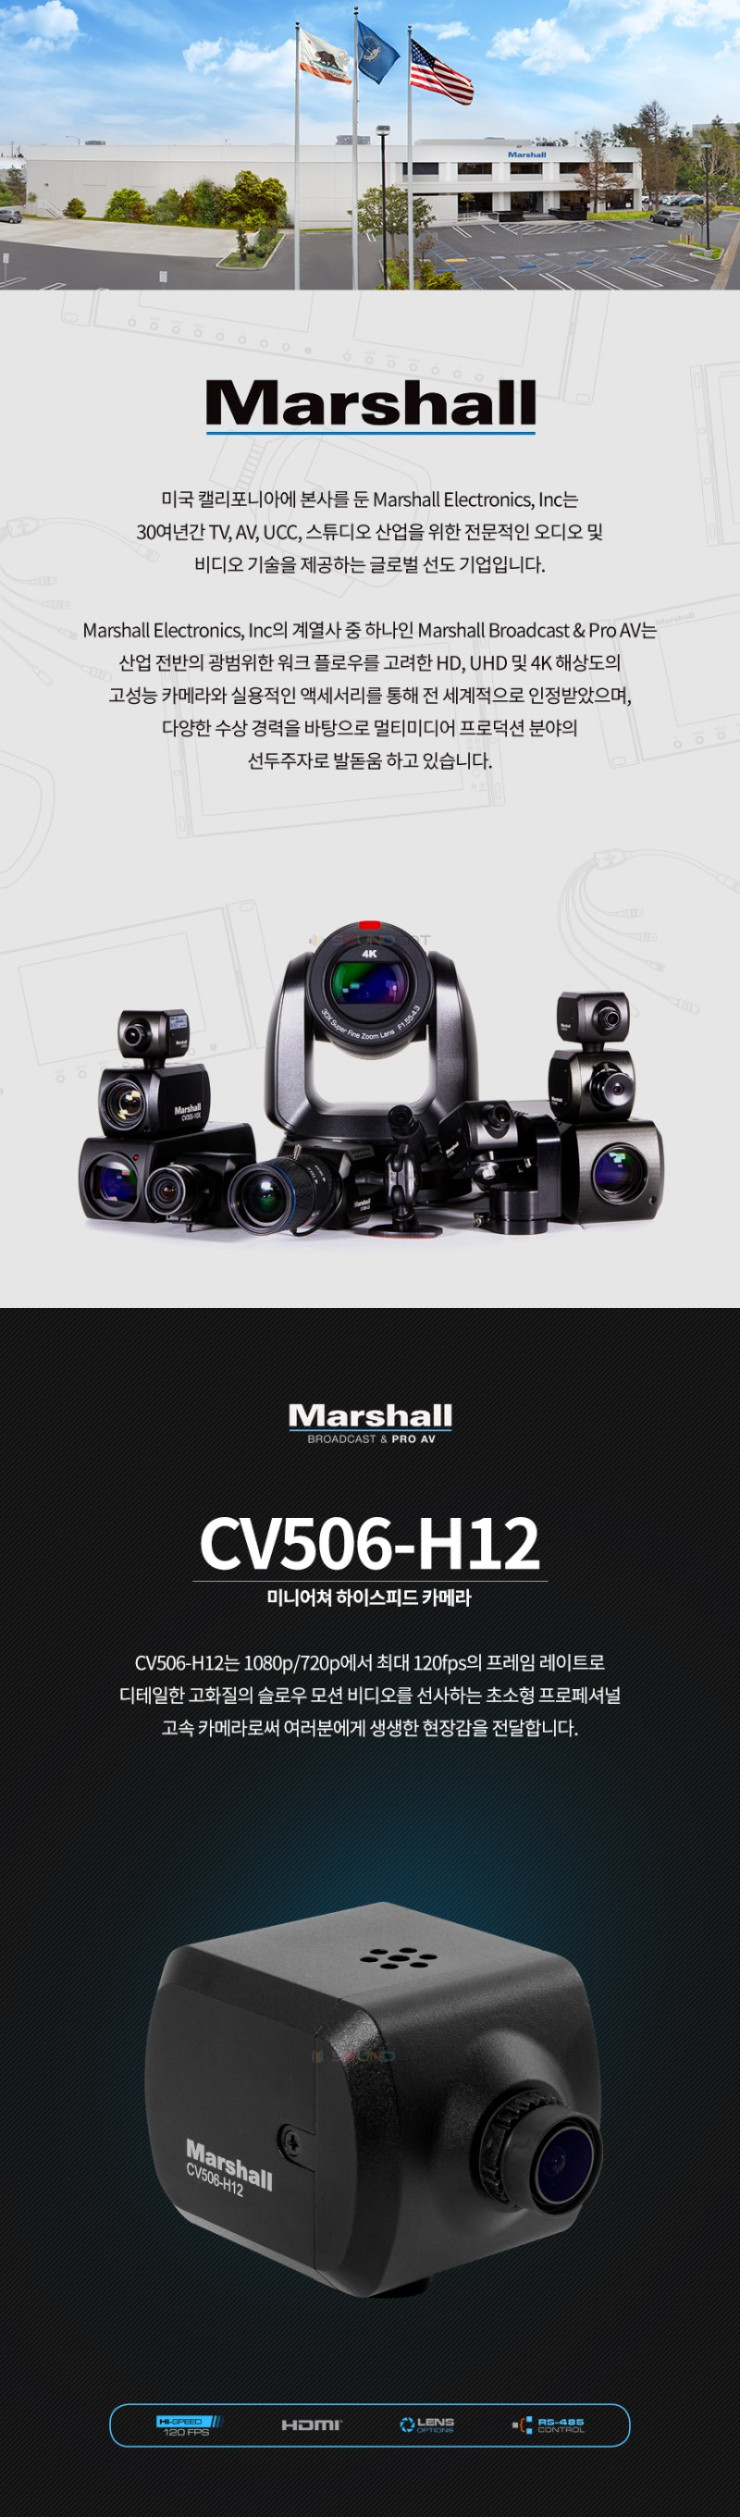 CV506-H12_01.jpg